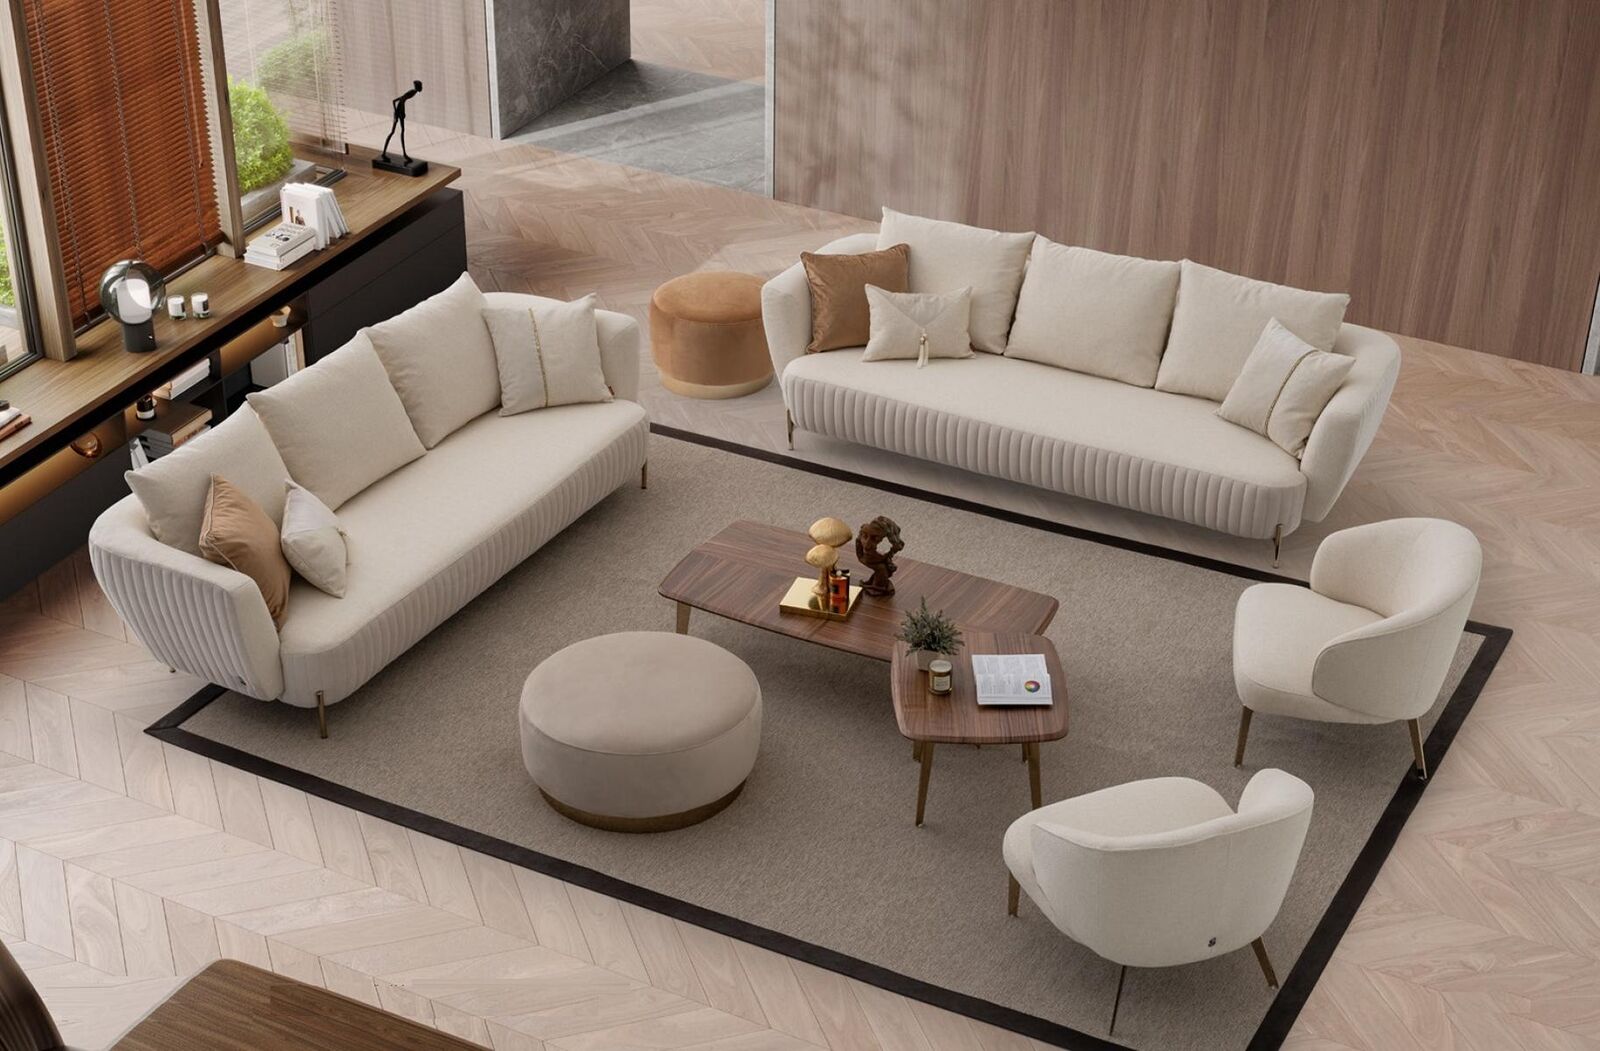 Sofa 4 Sitzer weiße Sofas Stil Luxus Wohnzimmer modernes Design Stoff Polsterung